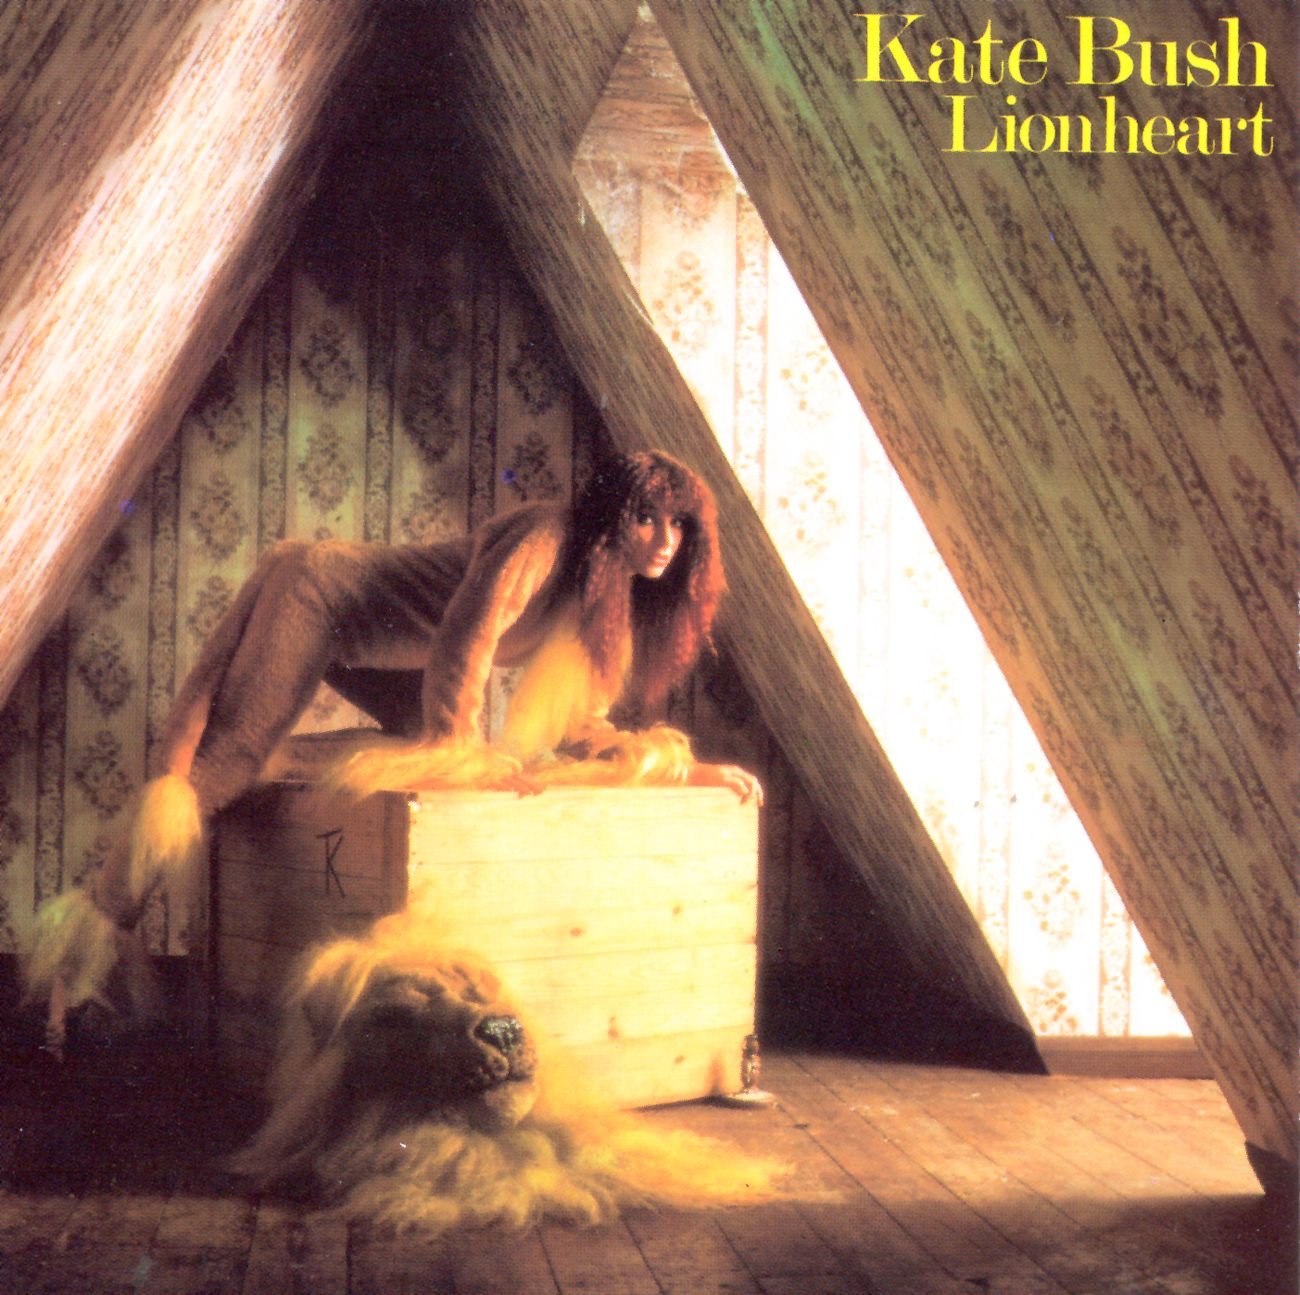 KATE BUSH - LIONHEART - VINYL LP - Wah Wah Records